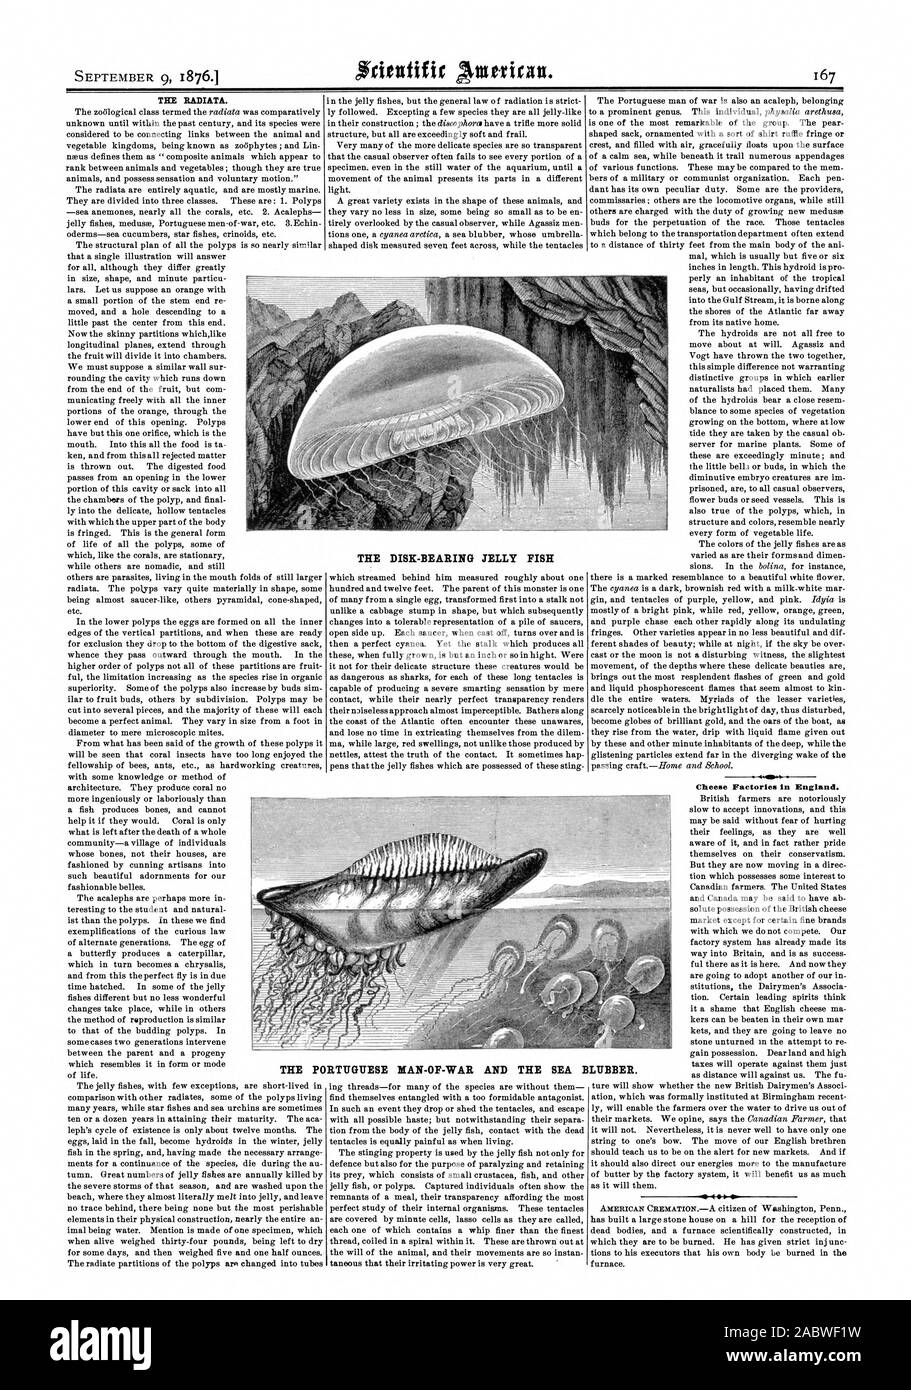 Les fromageries en Angleterre. S 400 Le disque-roulement JELLY FISH LES PORTUGAIS L'HOMME DE GUERRE ET DE LA MER. LARD, Scientific American, 76-09-09 Banque D'Images